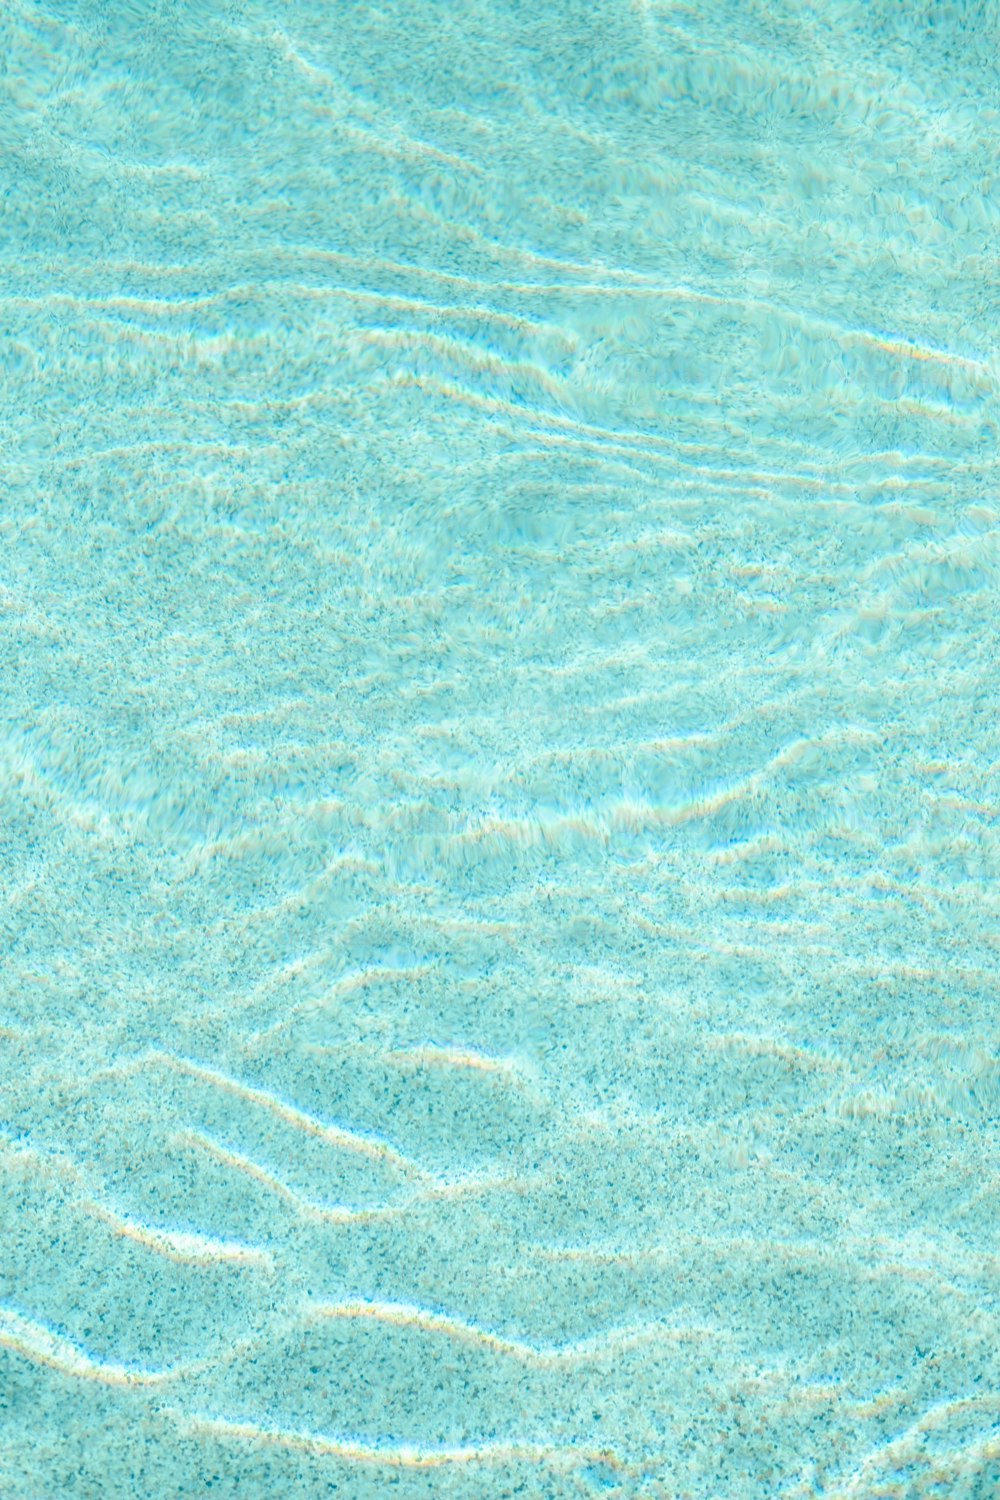 Ein blauer Pool mit klarem Wasser und Wellen